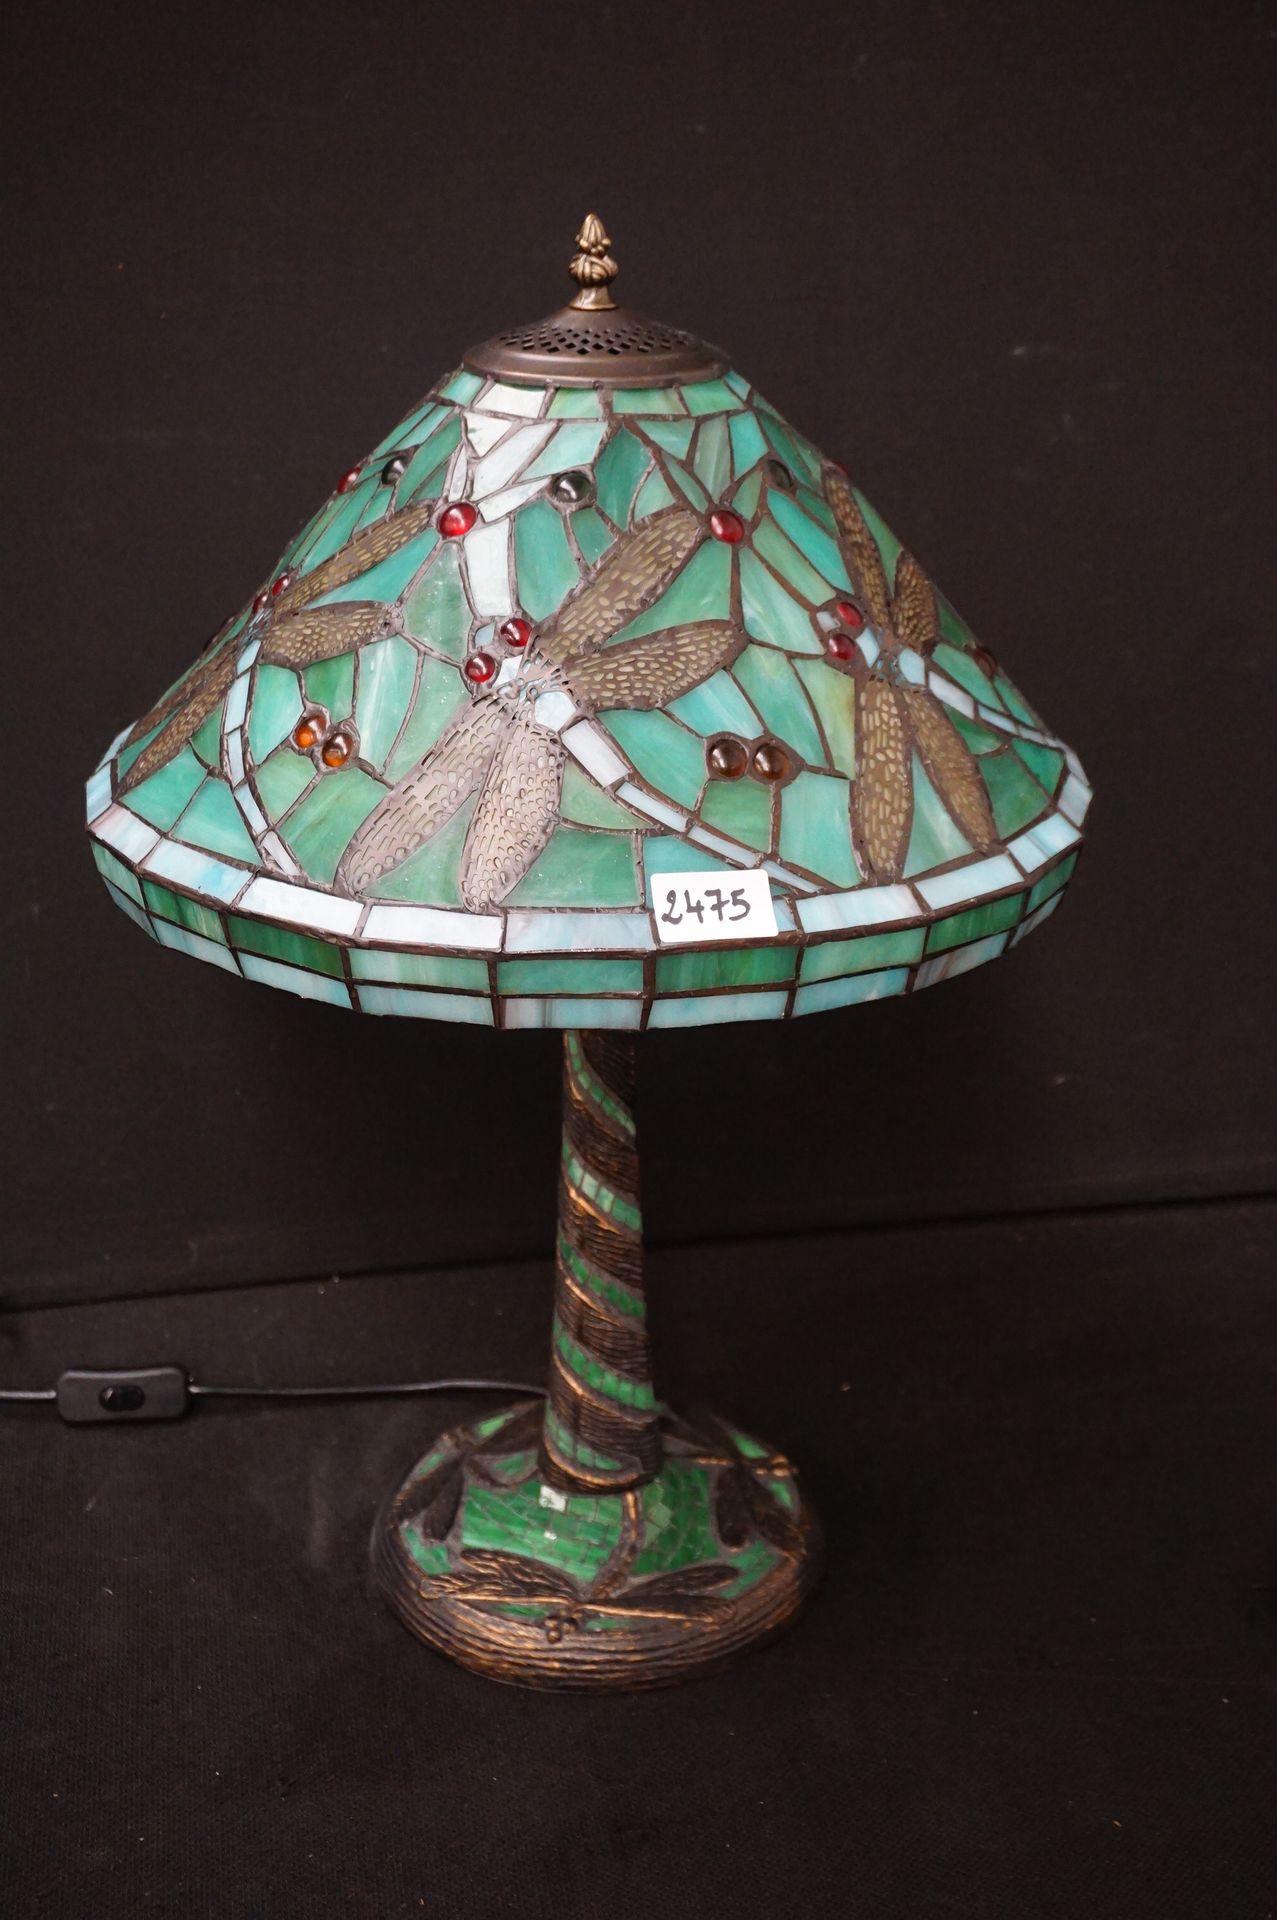 Lampe décorative de style Tiffany - Décorée de libellules - H : 50 cm